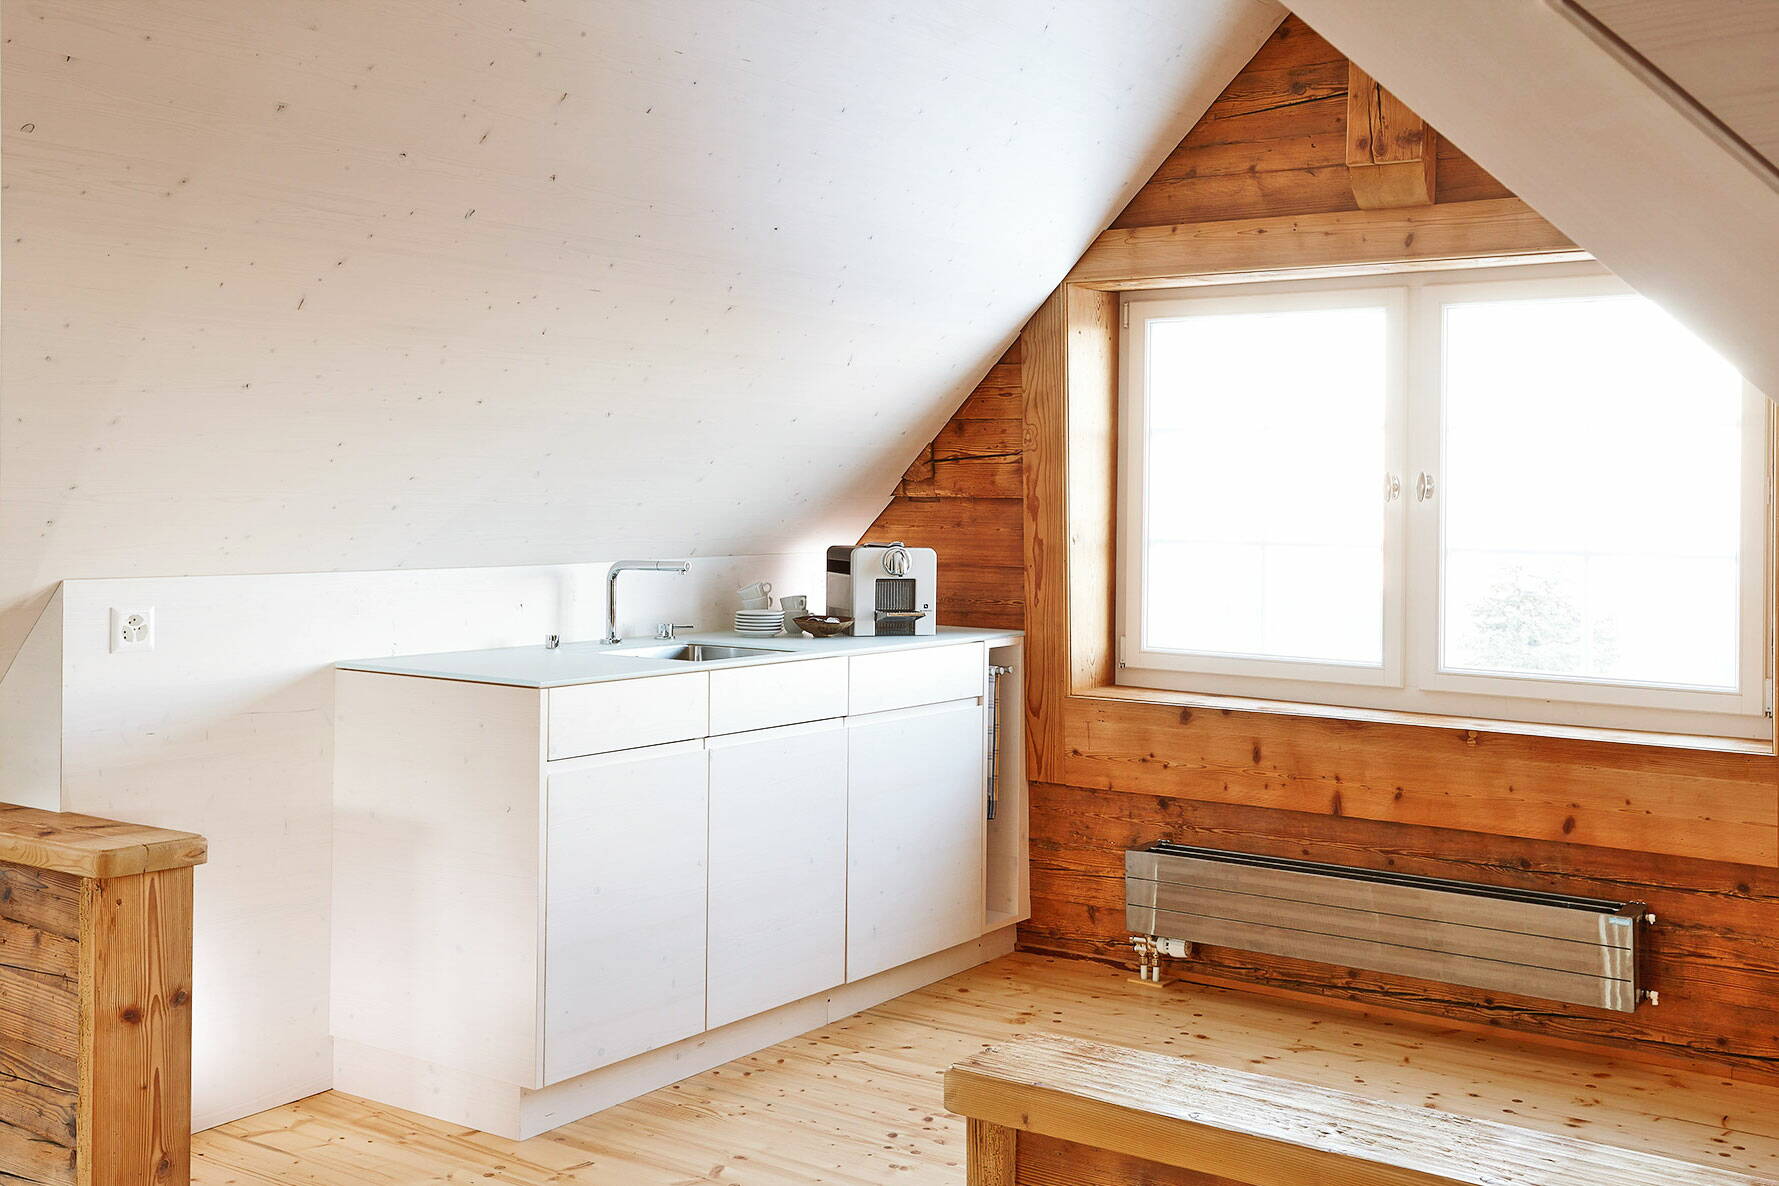 Zoom: Schlichte, moderne Küche in Holz gearbeitet im Dachstock eines Altbaus mit grosszügigem Fenster.